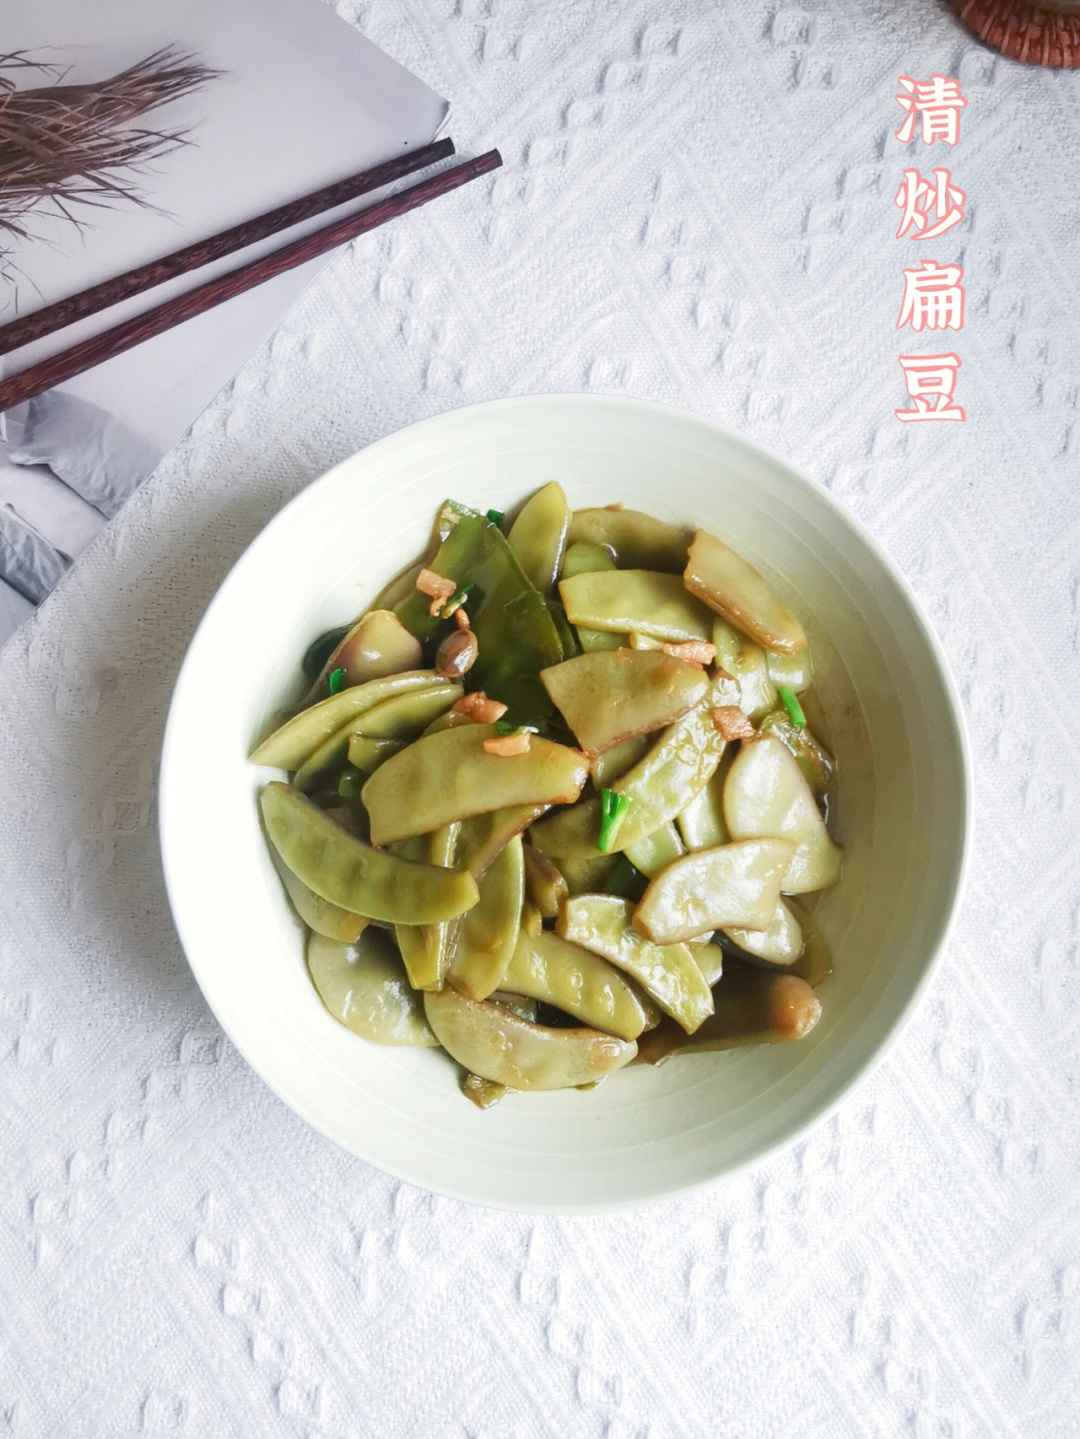 清炒扁豆也是非常好吃的一道家常菜～食材:扁豆适量,青椒一个,食用油